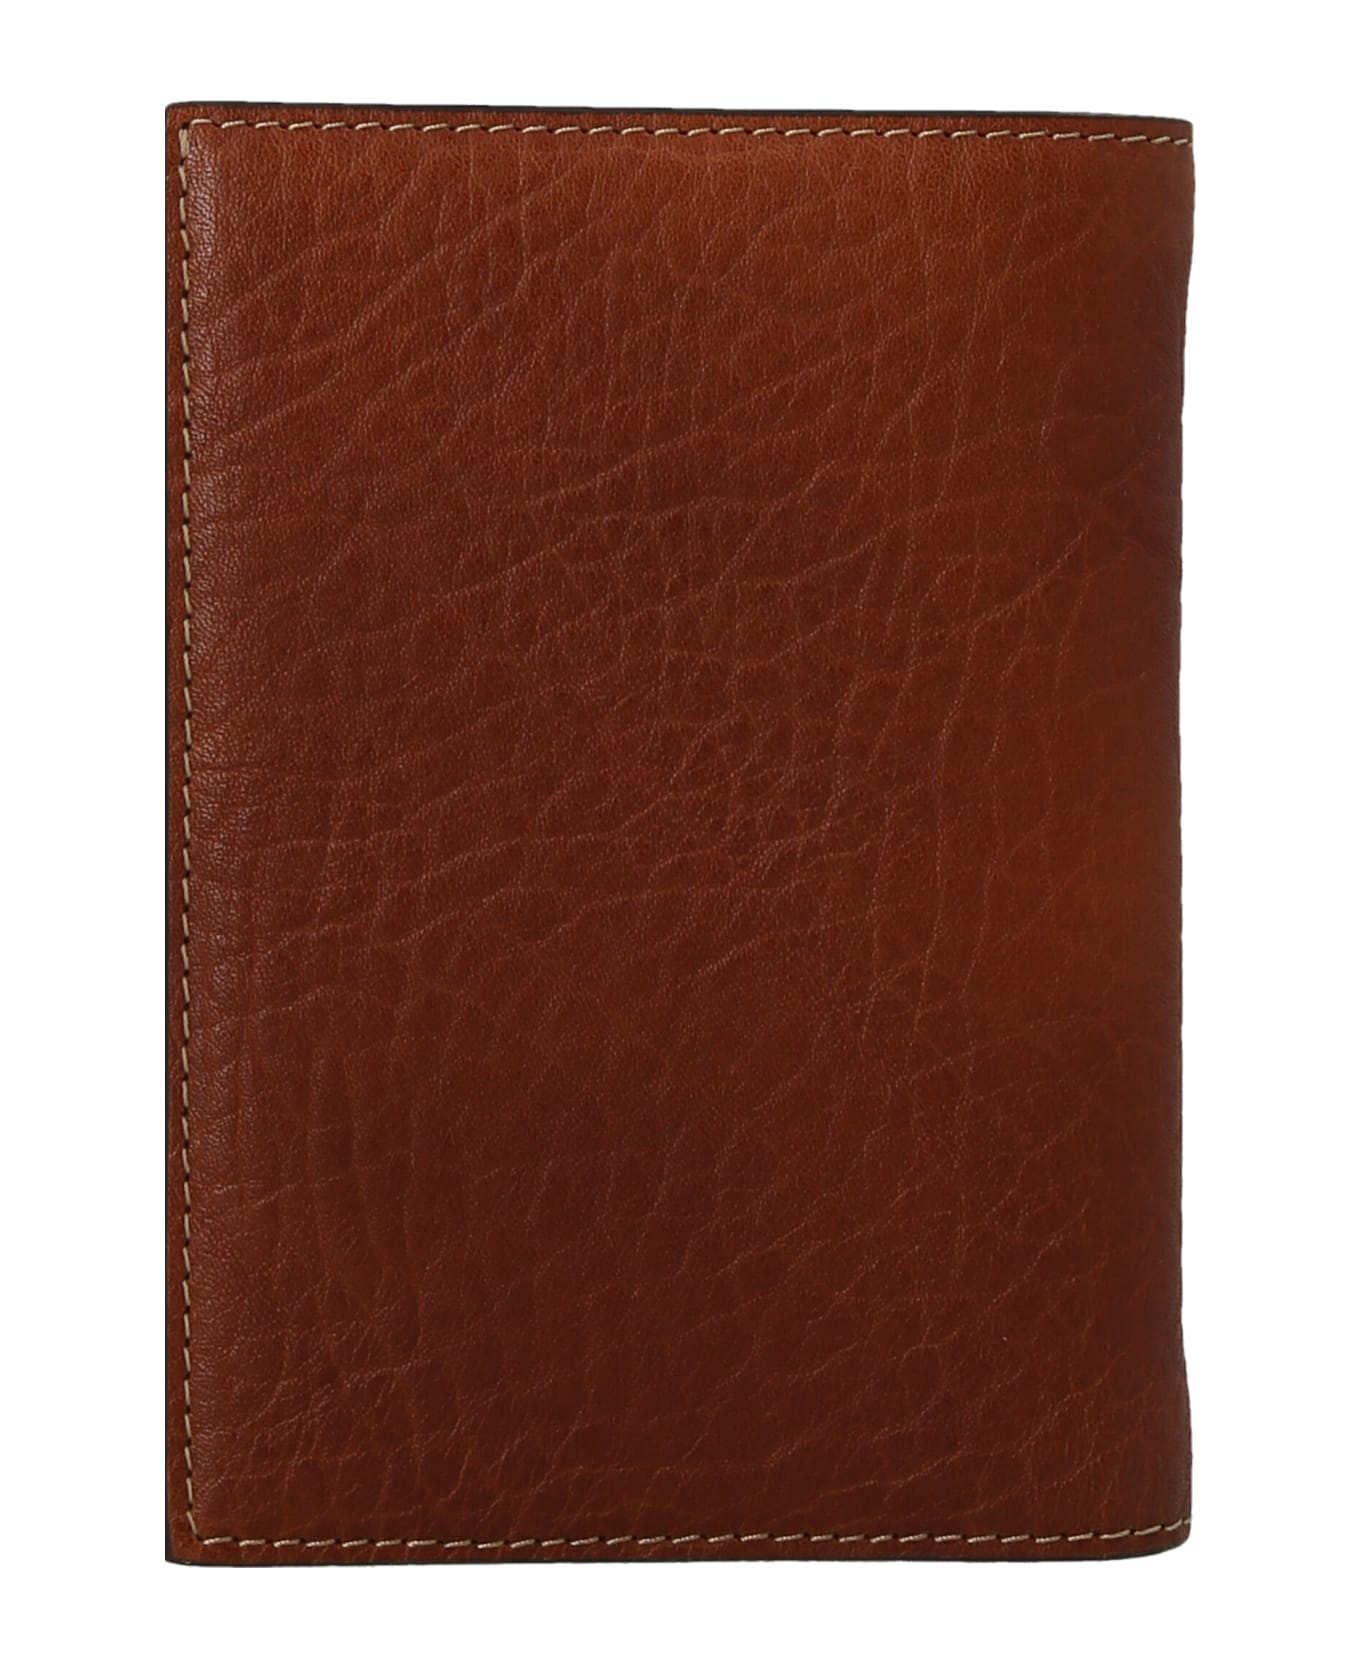 Brunello Cucinelli Leather Wallet - Brown